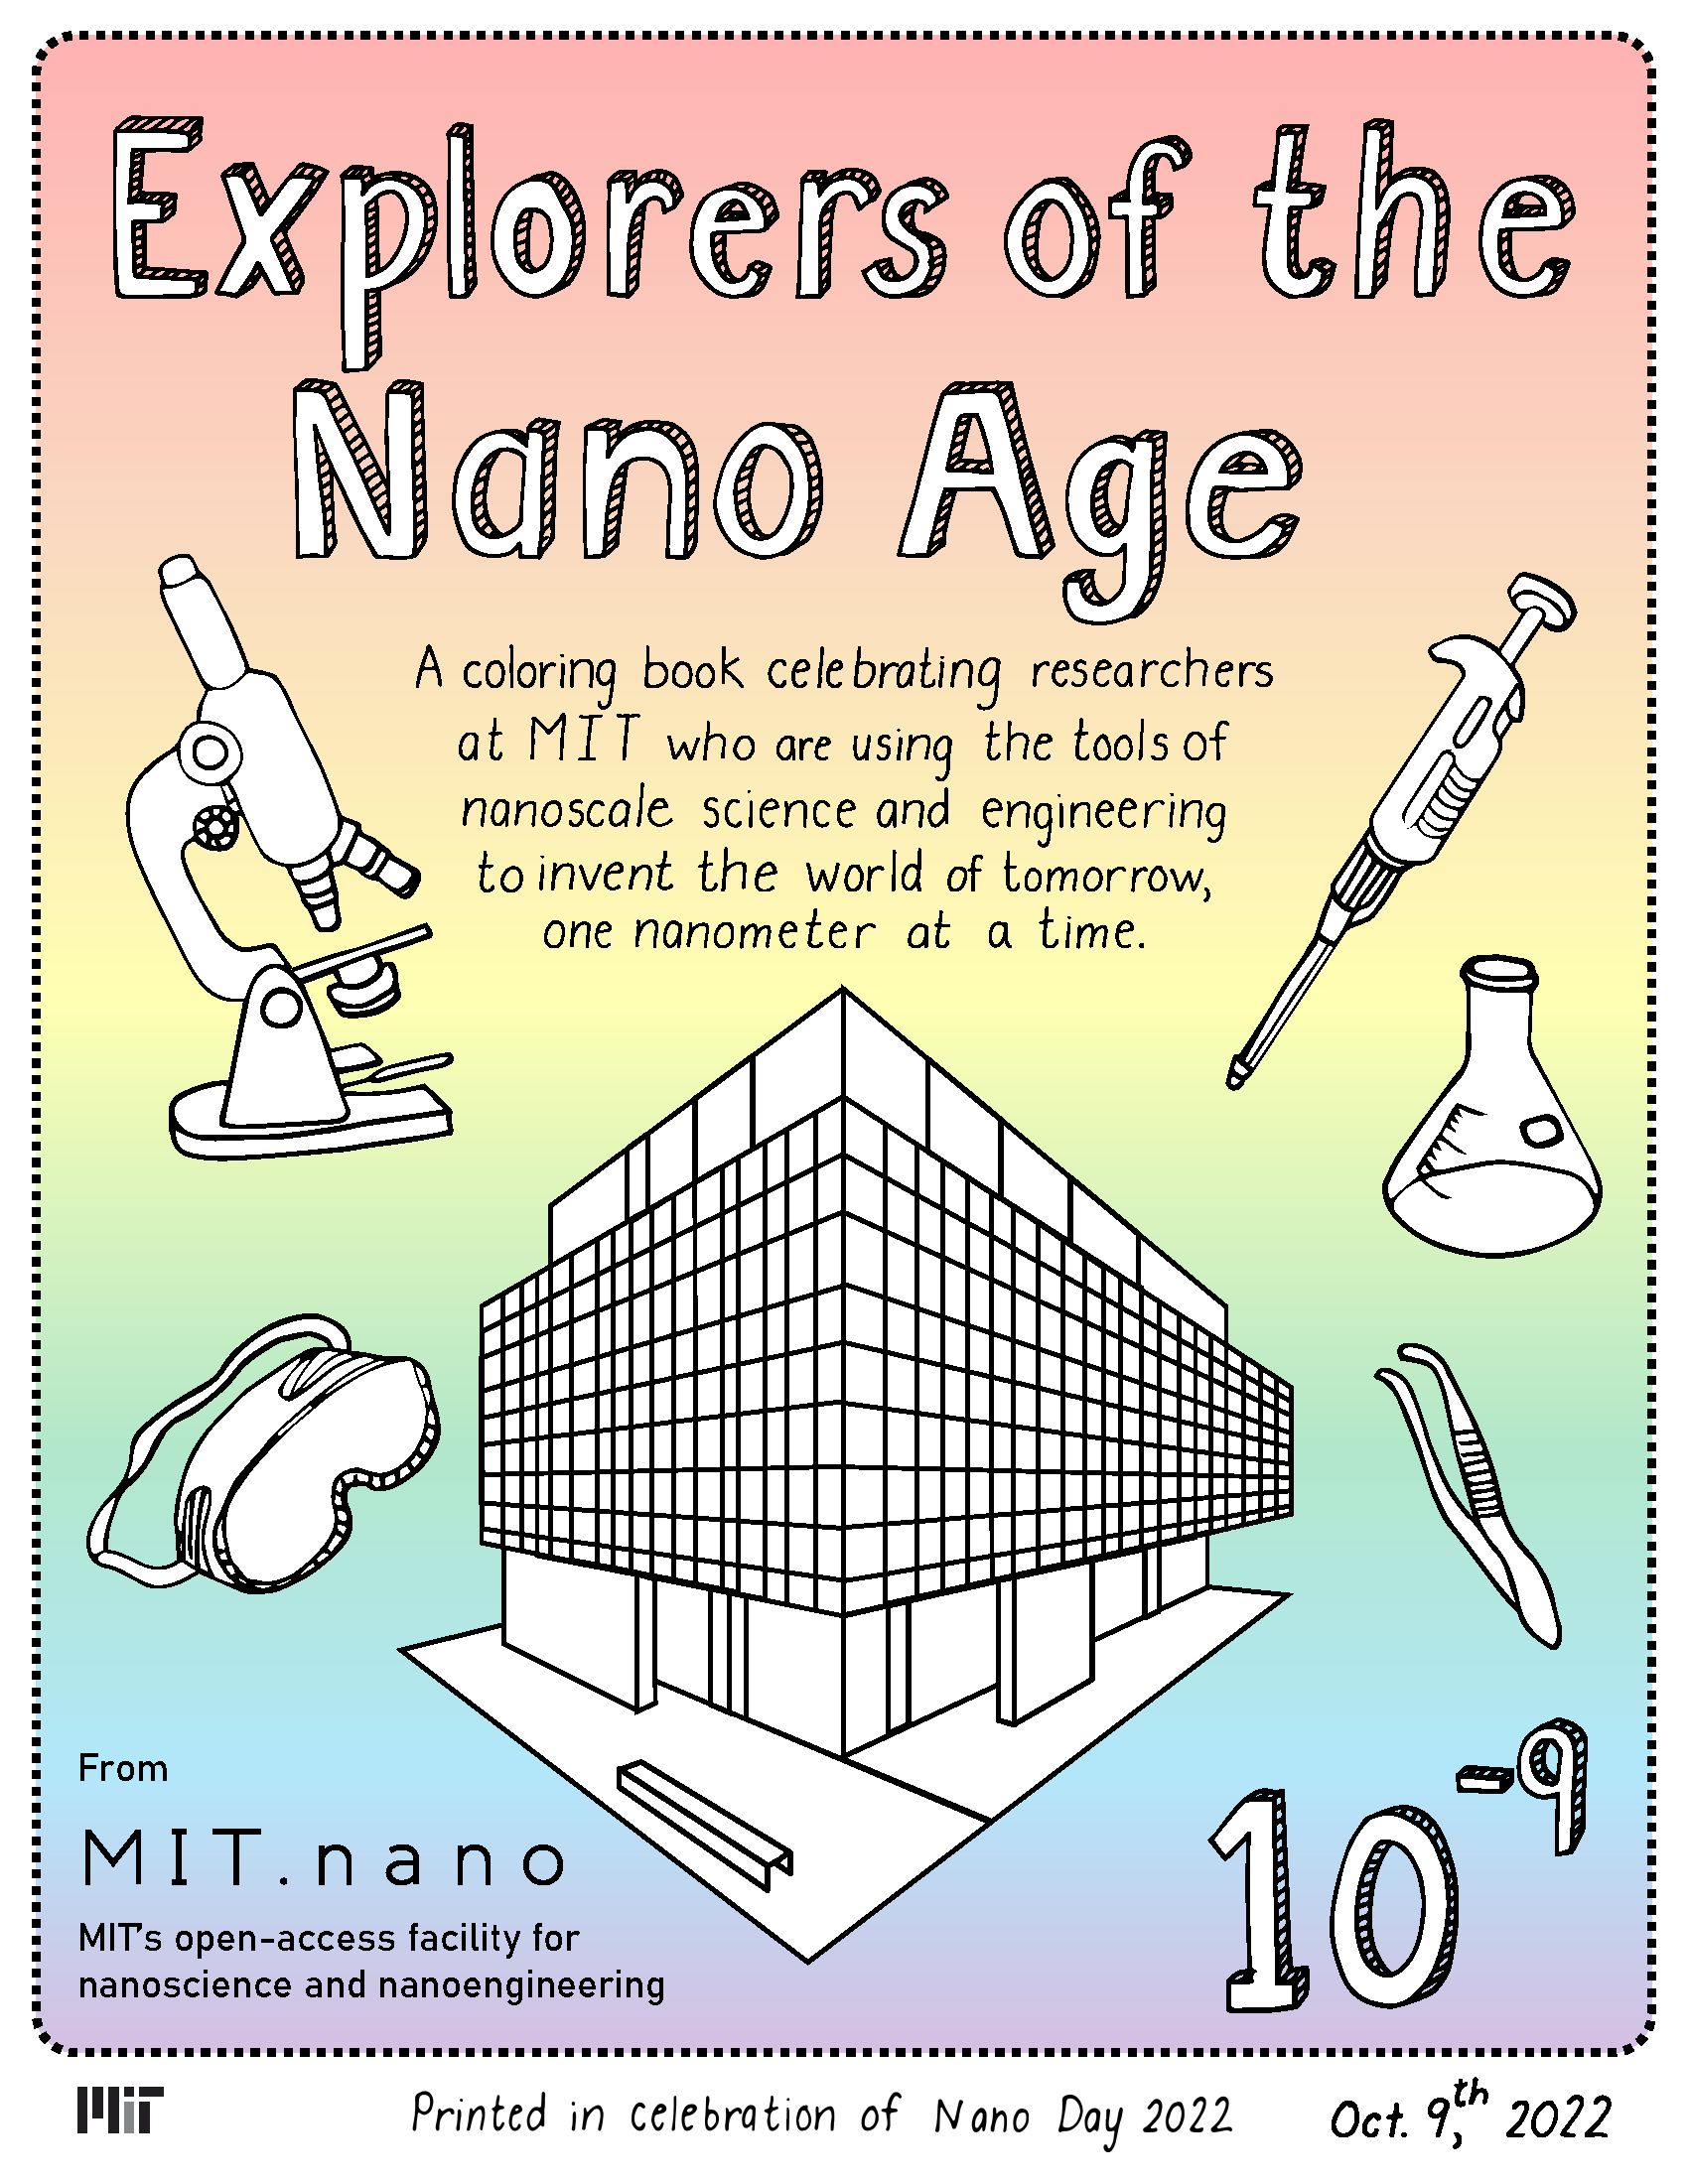 MIT.nano Nano Day Coloring Book Cover.